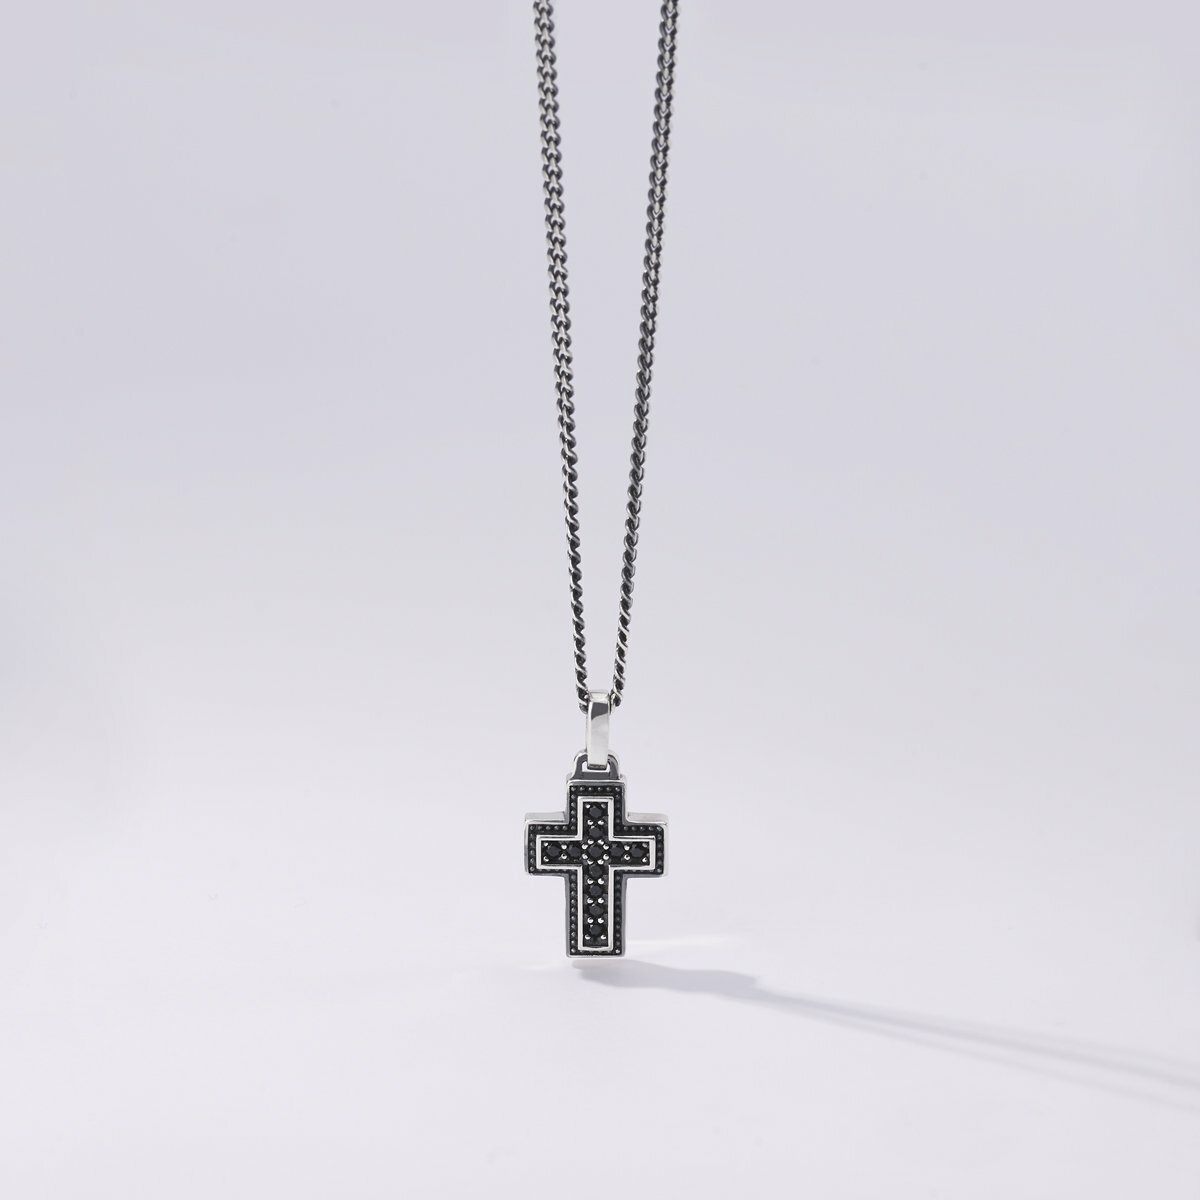 Men's necklace in silver Mabina Gioielli 553384